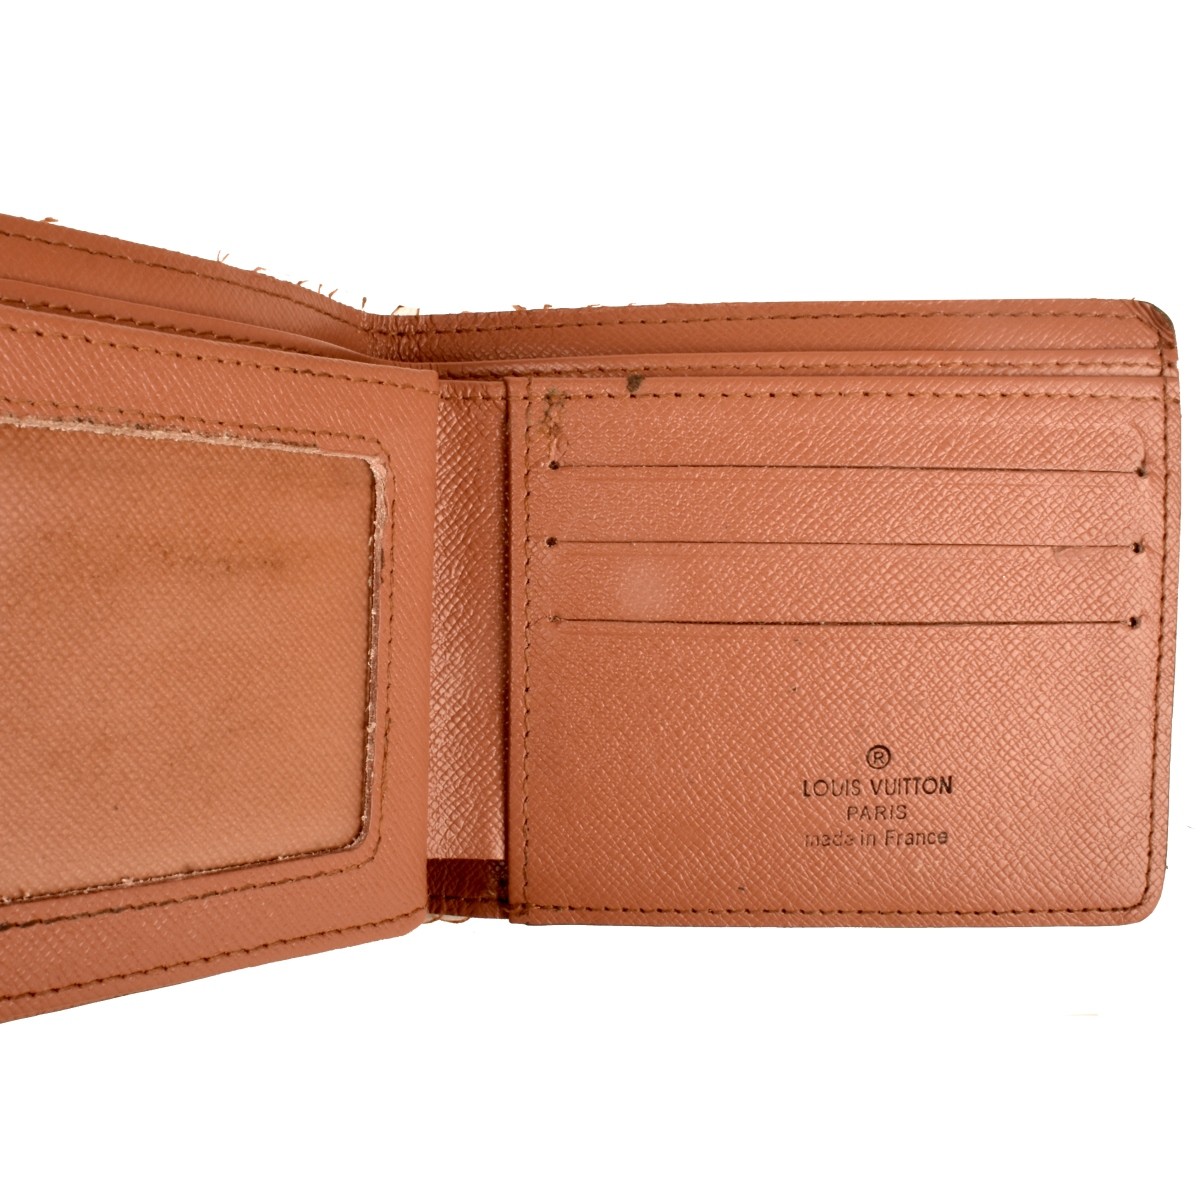 Replica Louis Vuitton Bag and Wallet